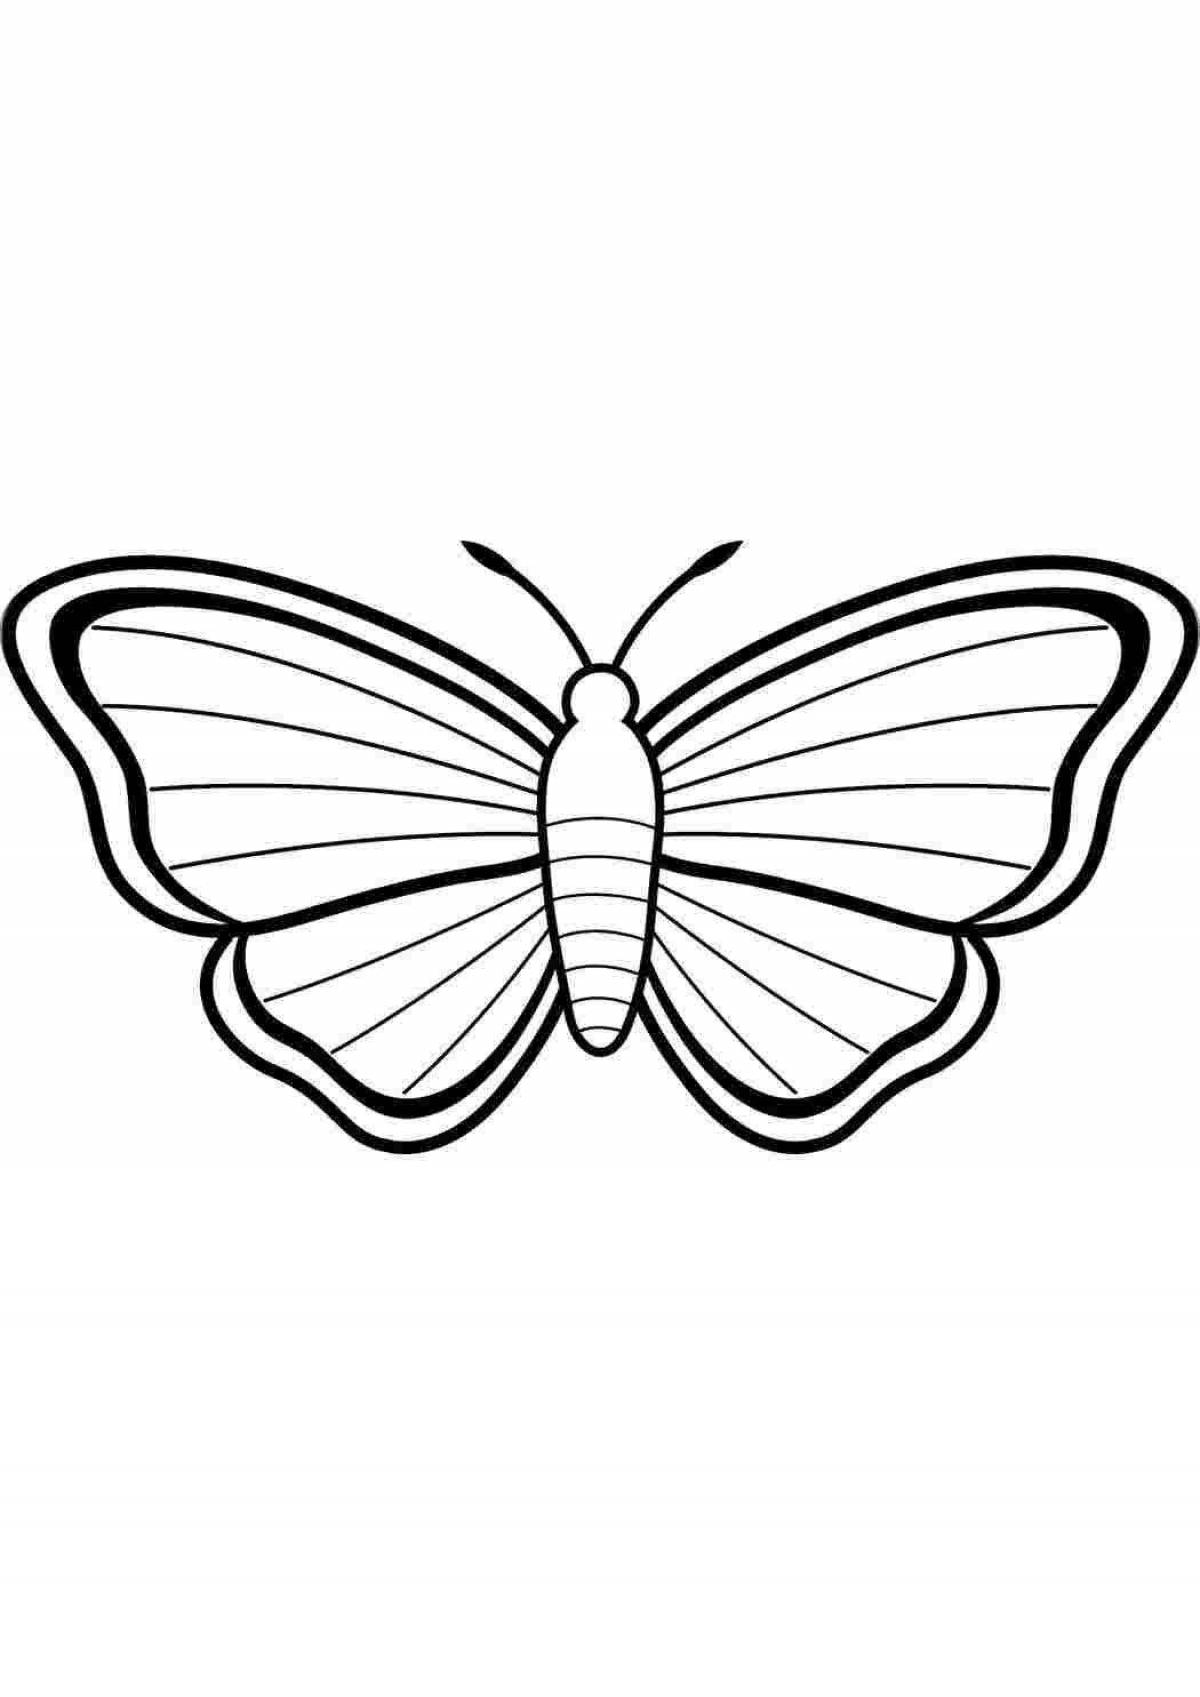 Раскраска величественные черно-белые бабочки